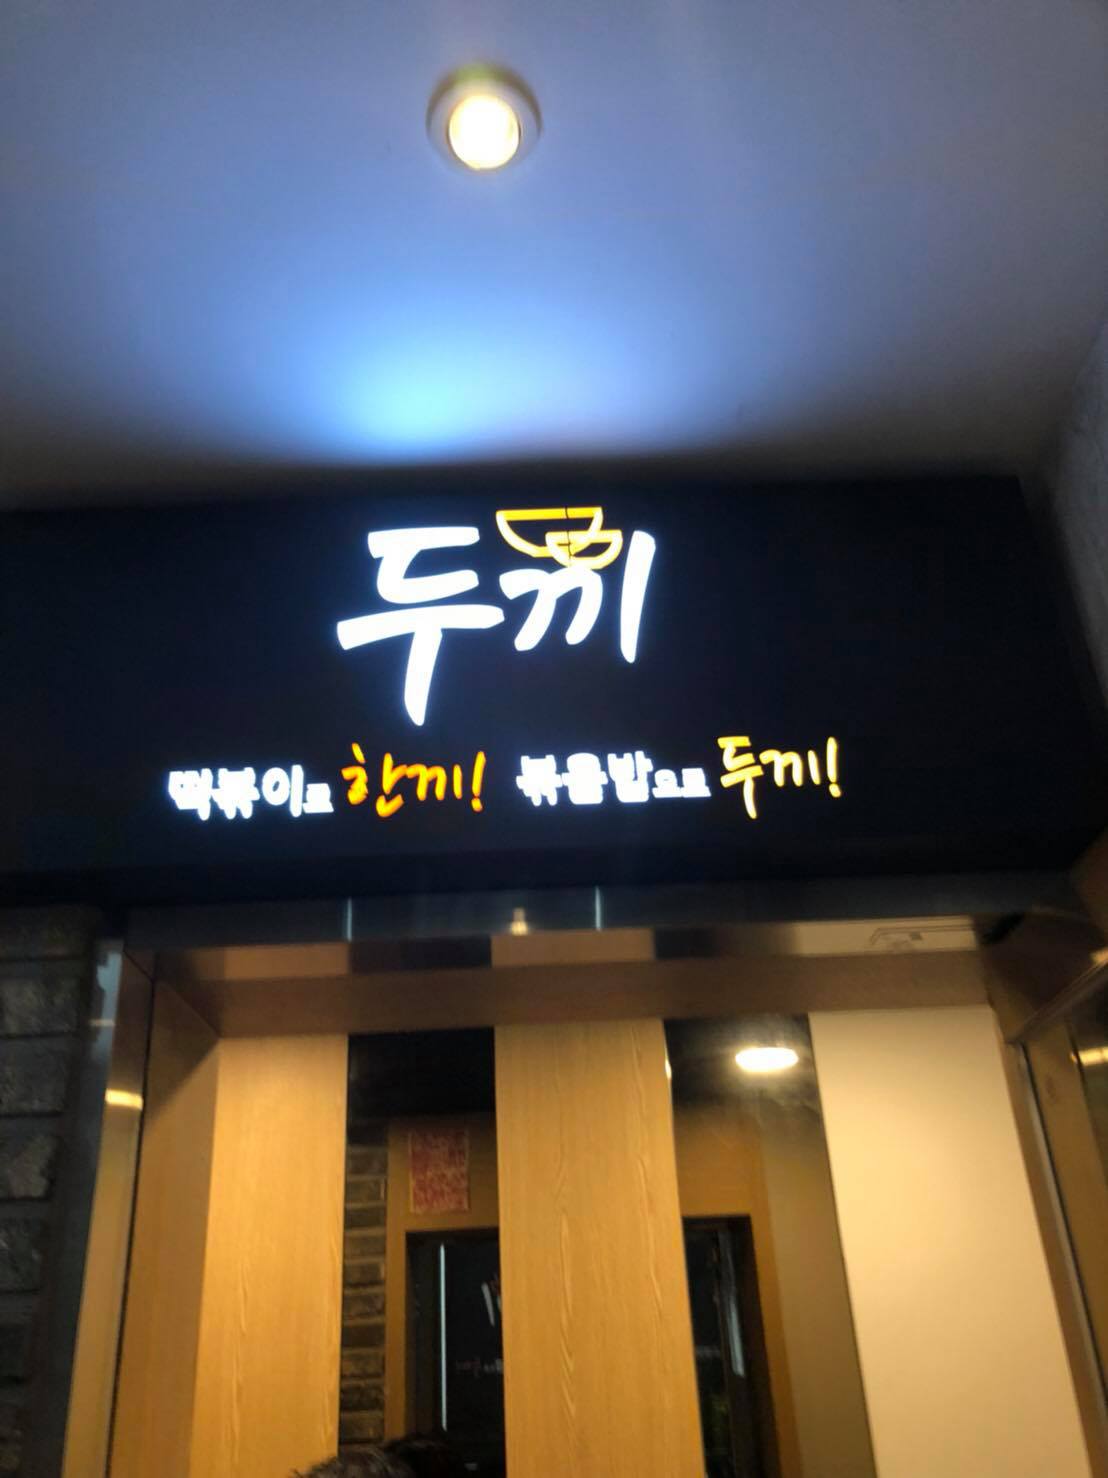 韓國釜山兩餐韓式年糕鍋